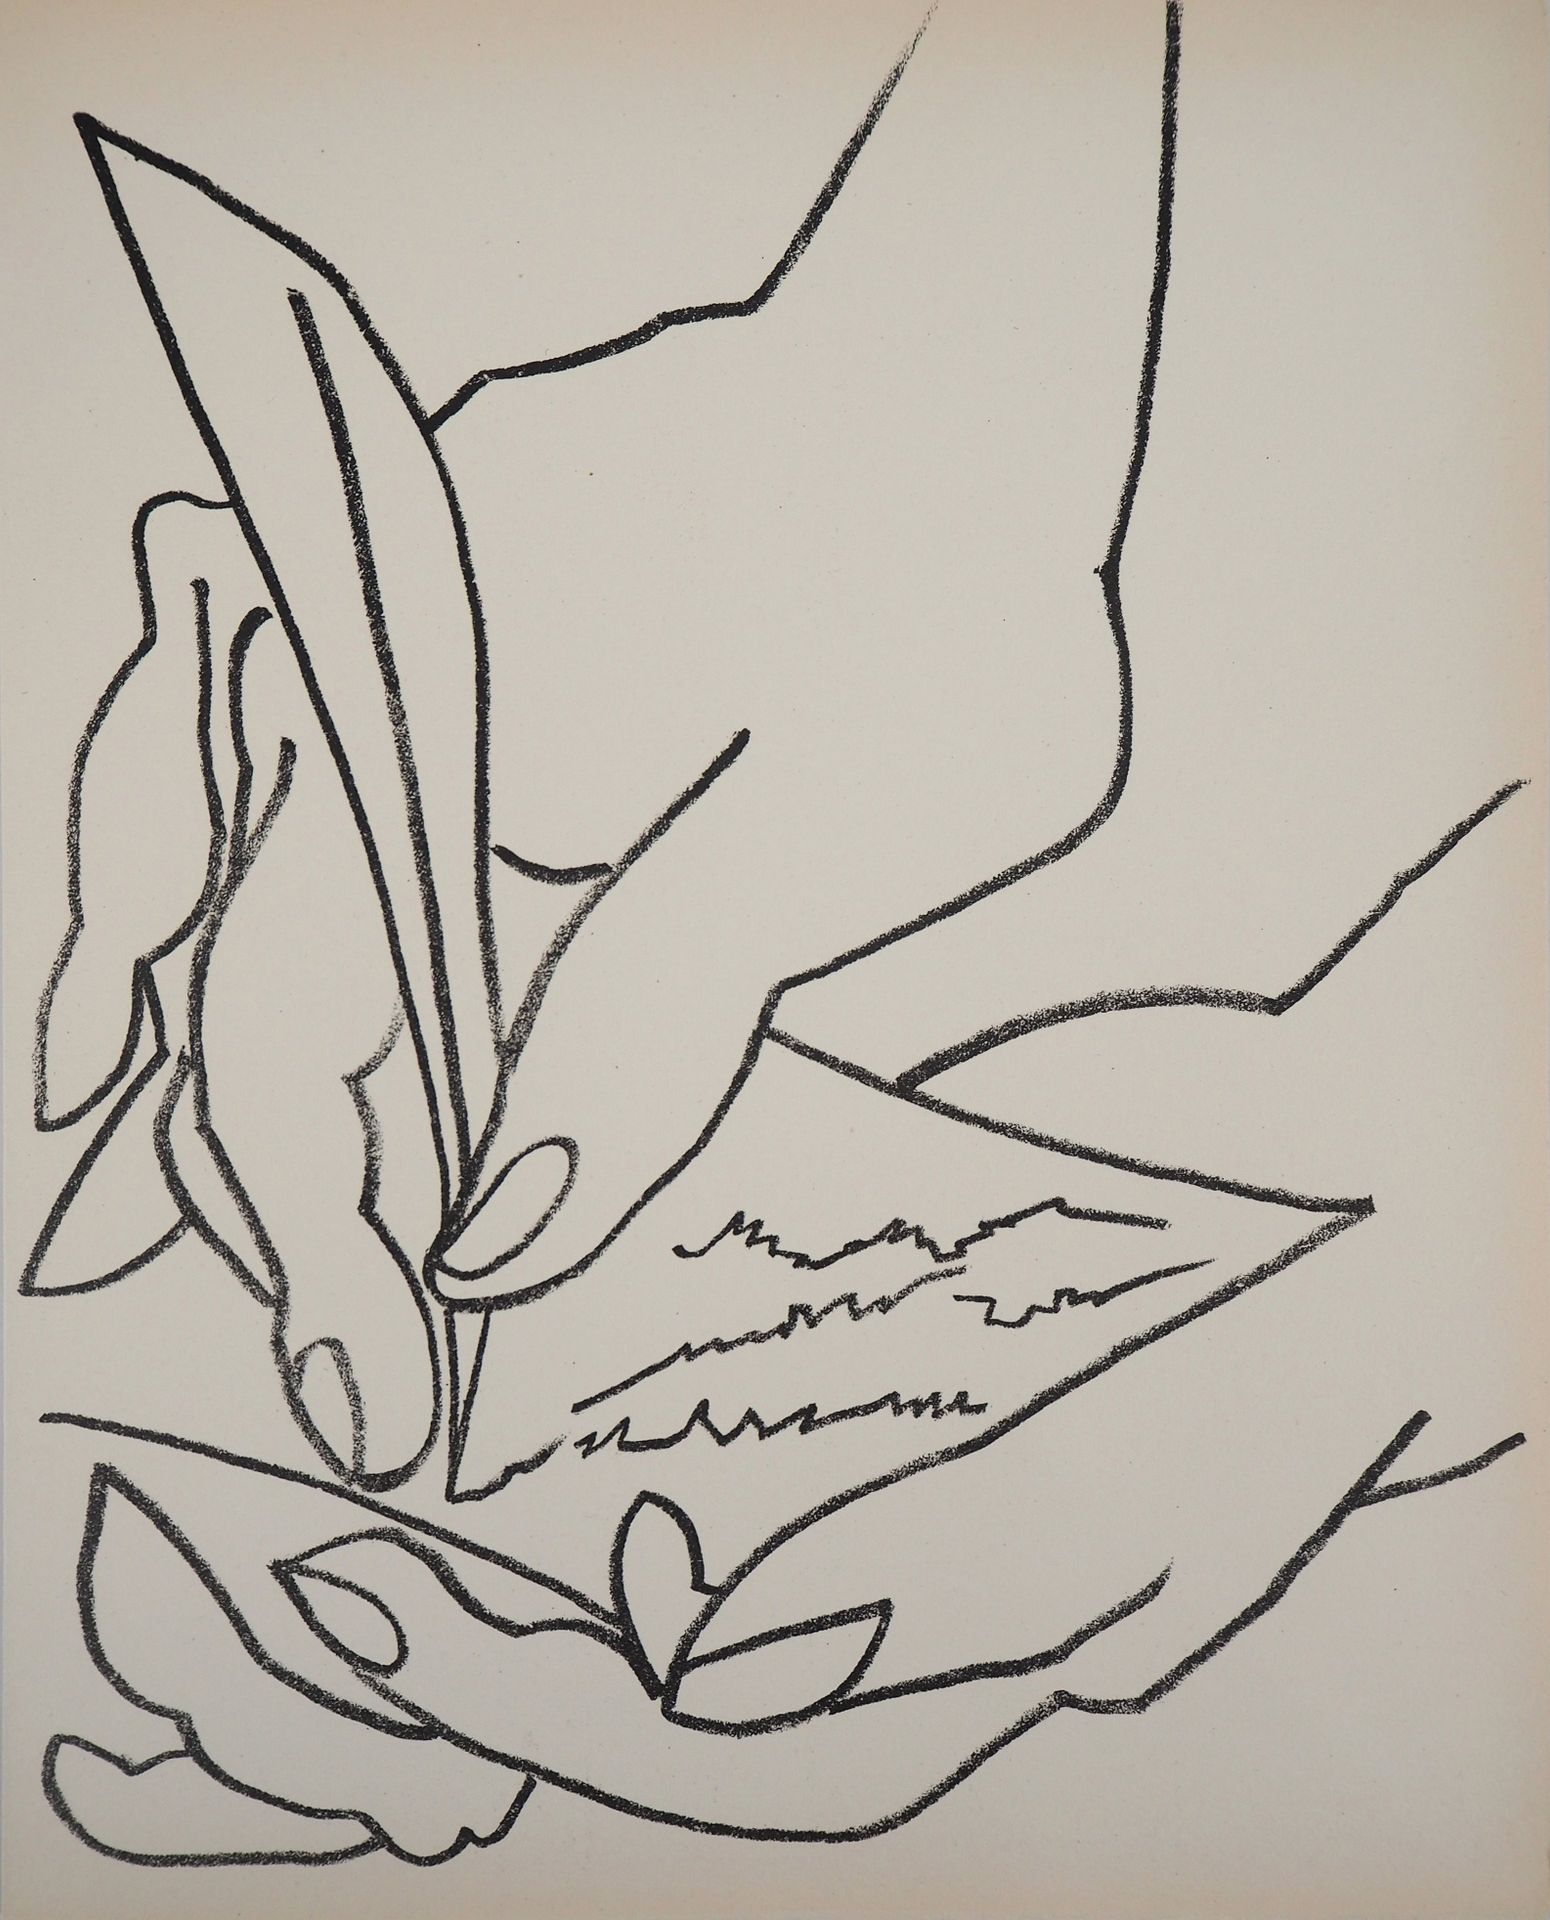 FRANÇOISE GILOT 弗朗索瓦丝-吉洛特 (1921)

Le billet doux, 1951

原始石版画

马莱斯羊皮纸上 28 x 22.5&hellip;